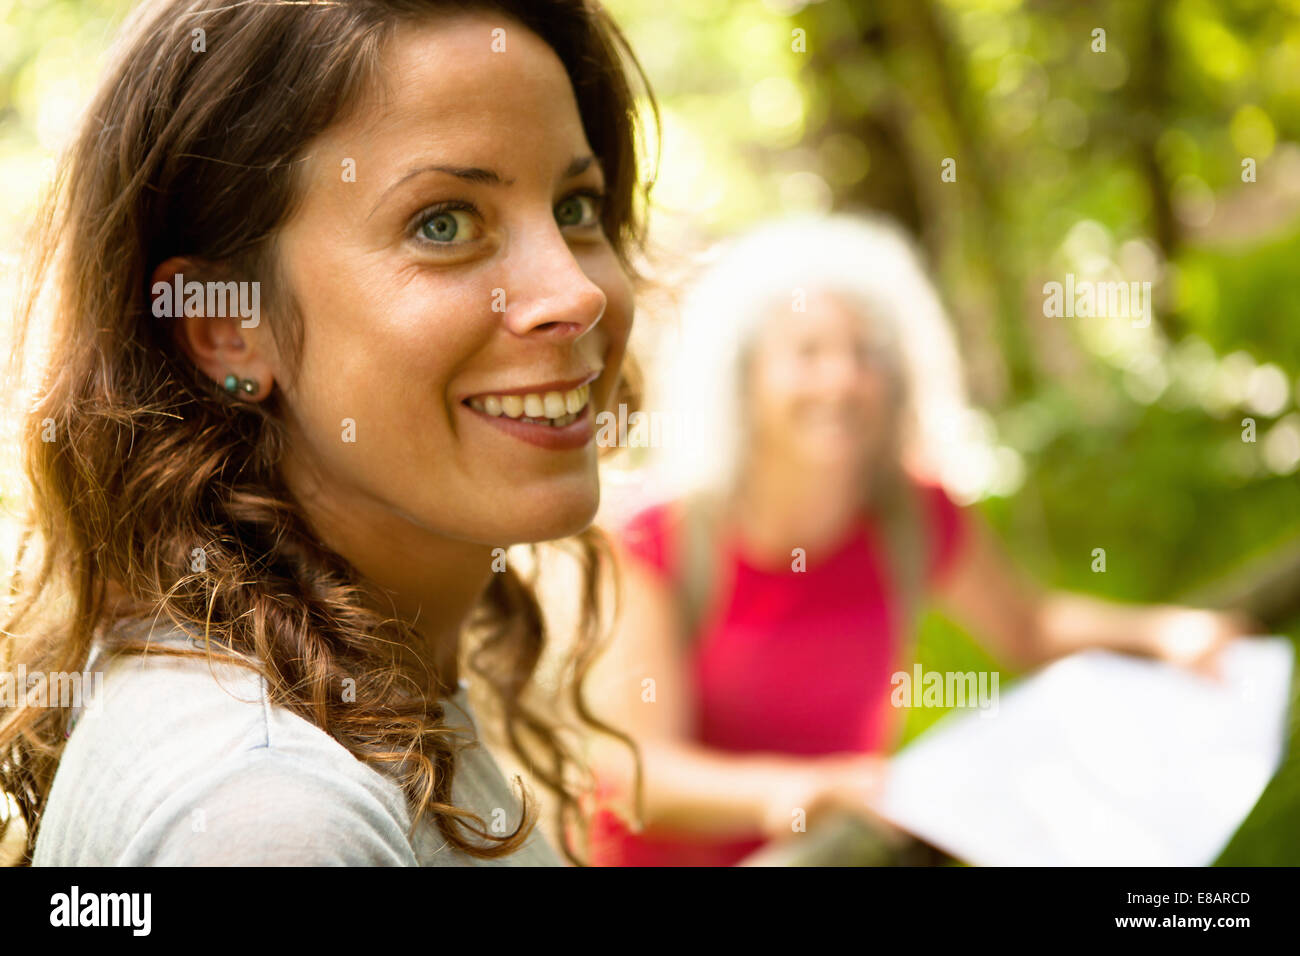 Vista lateral de la mujer con una amplia sonrisa Foto de stock